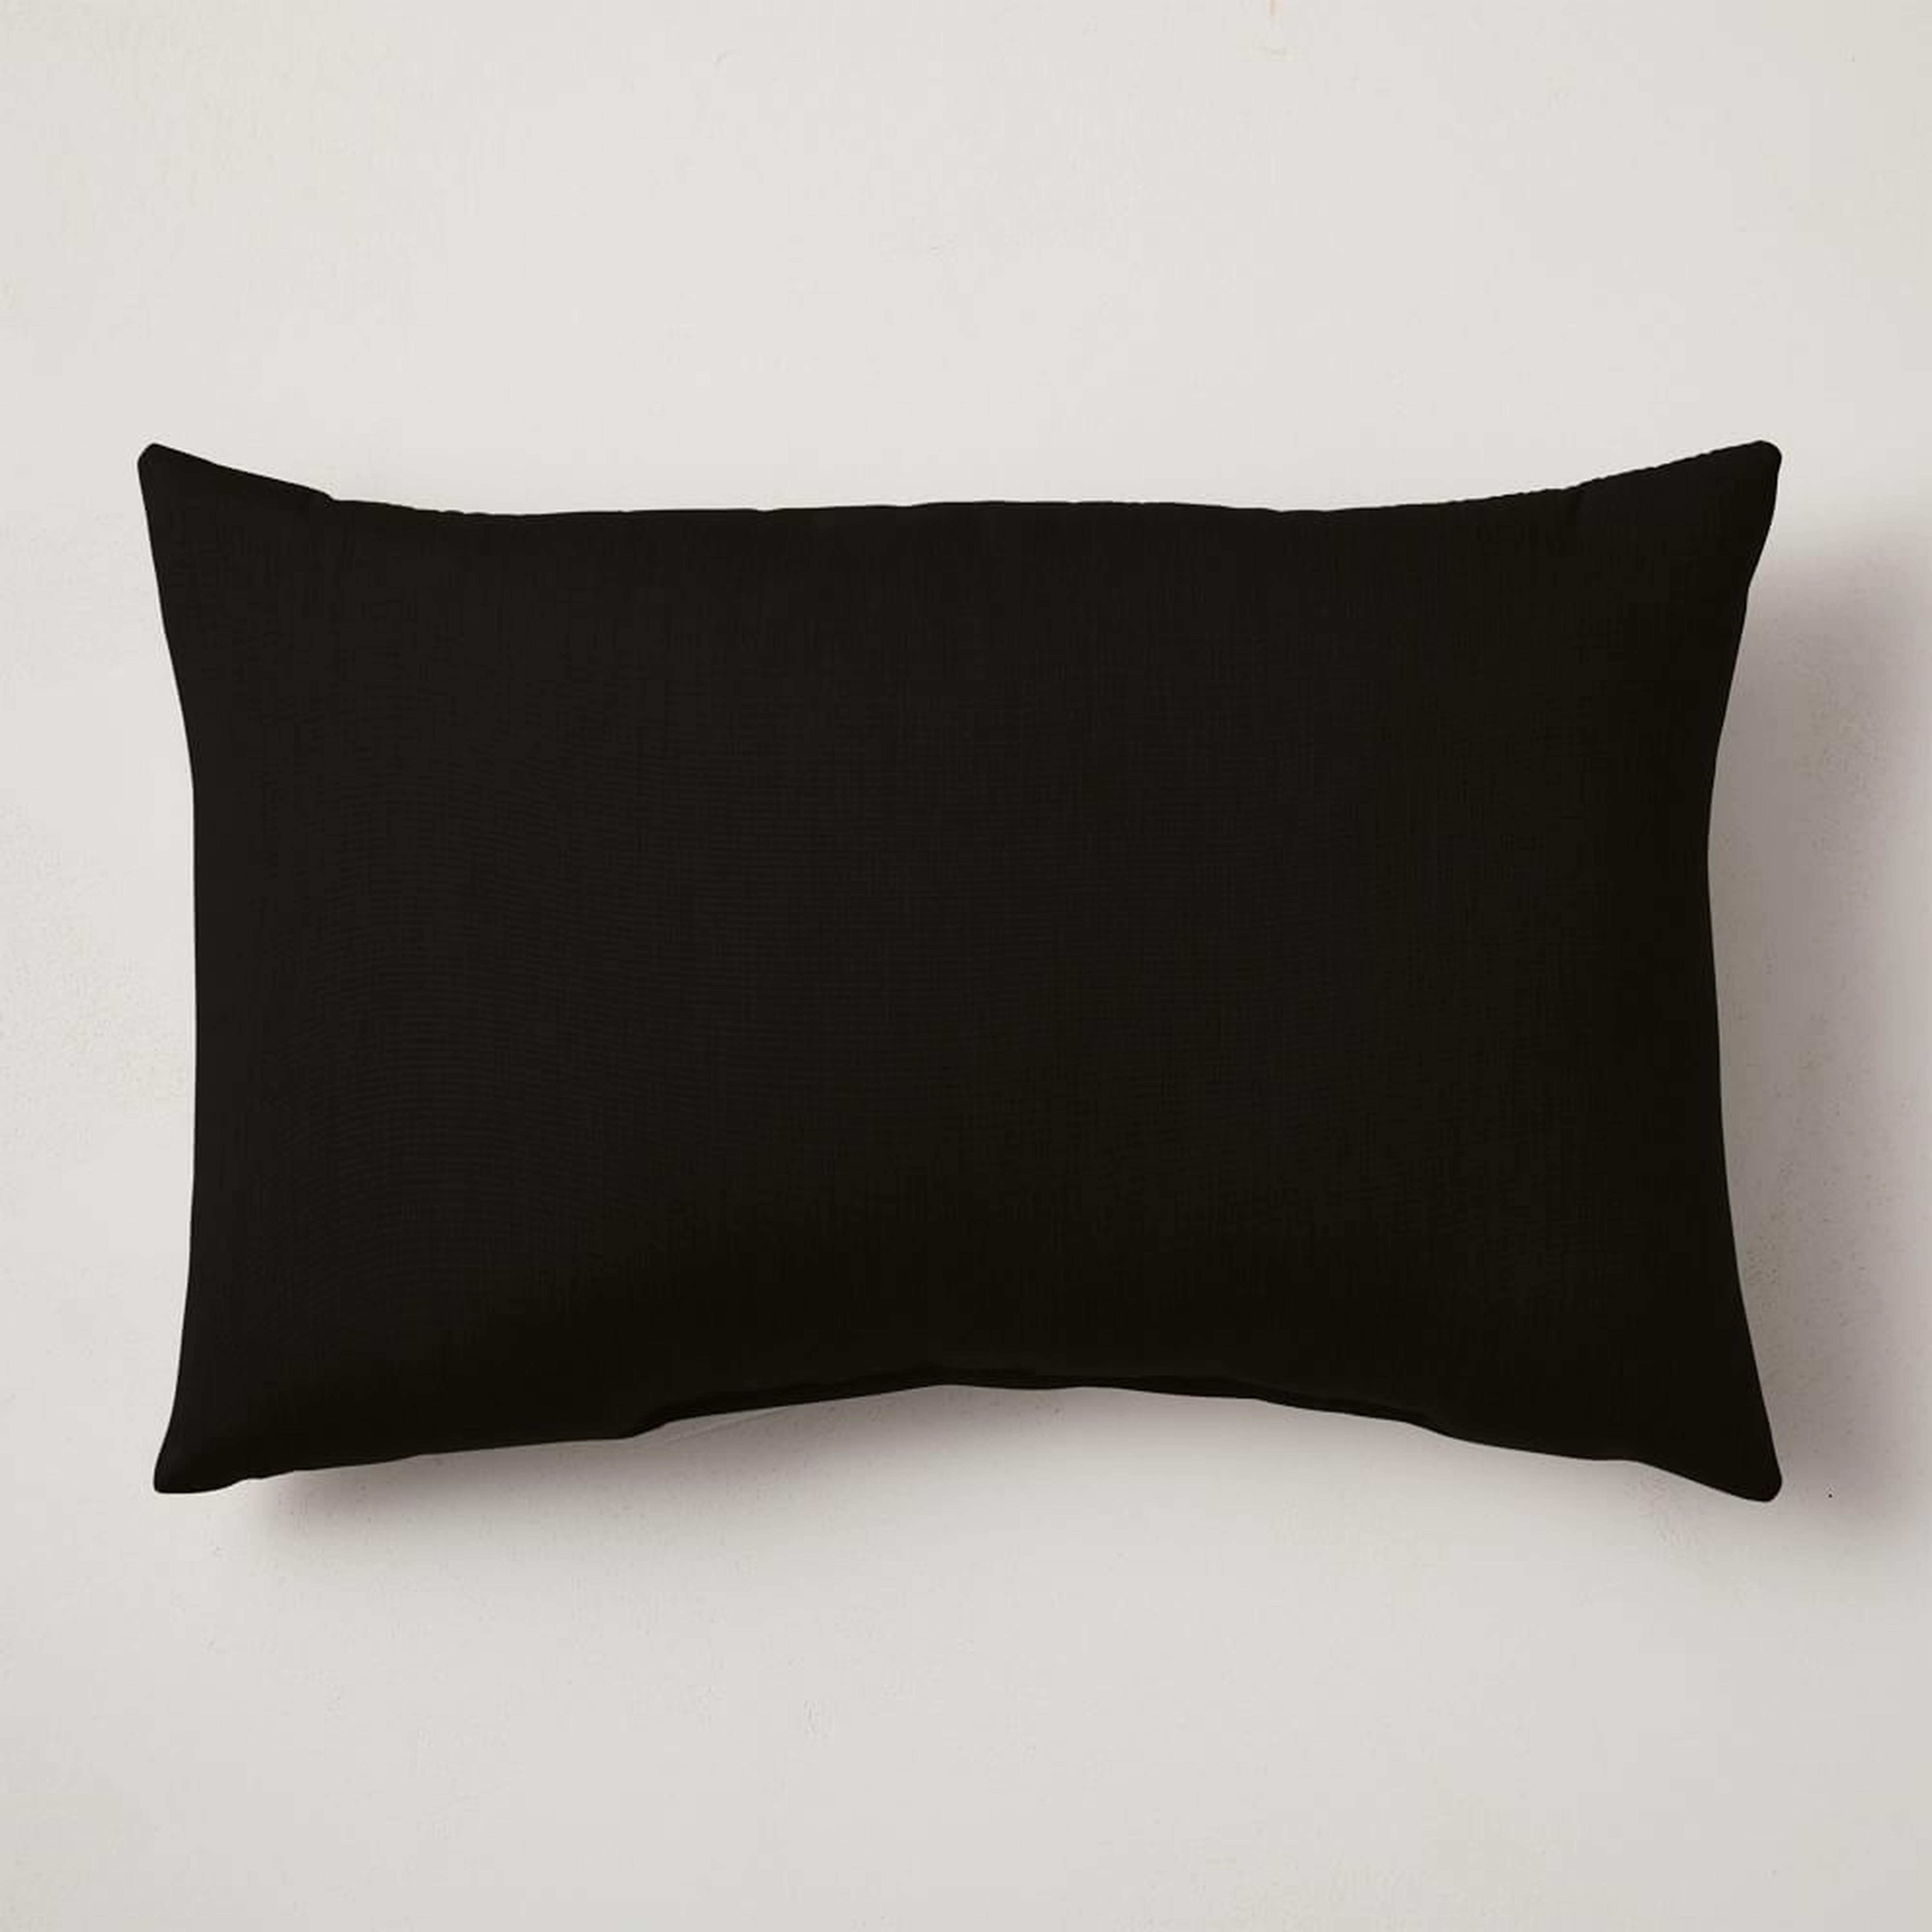 Sunbrella Indoor/Outdoor Canvas Pillow, 16"x24", Black - West Elm